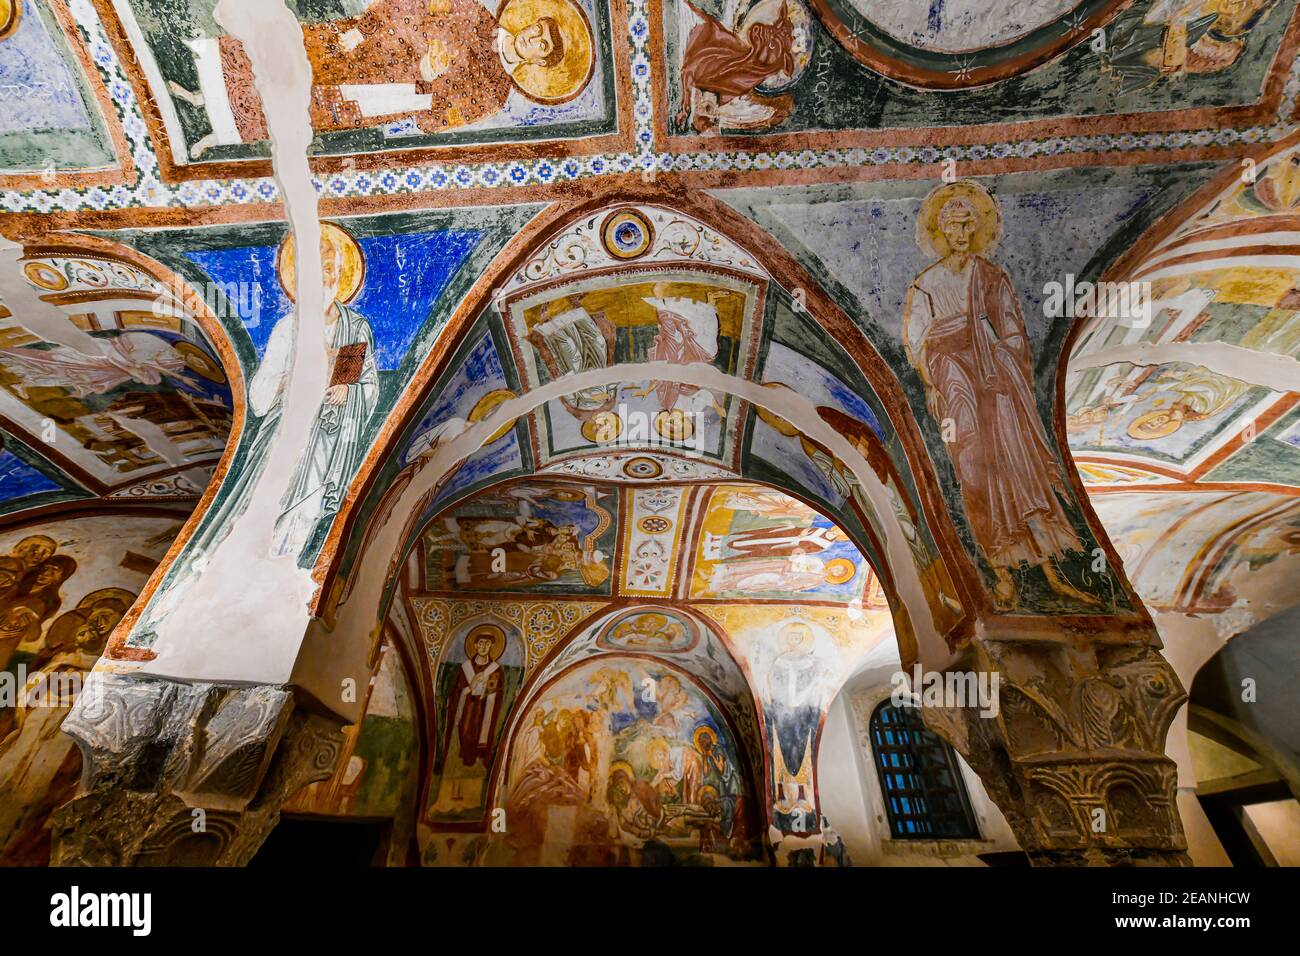 Bunte Krypta der Fresken, UNESCO-Weltkulturerbe, Aquileia, Udine, Friaul-Julisch Venetien, Italien, Europa Stockfoto